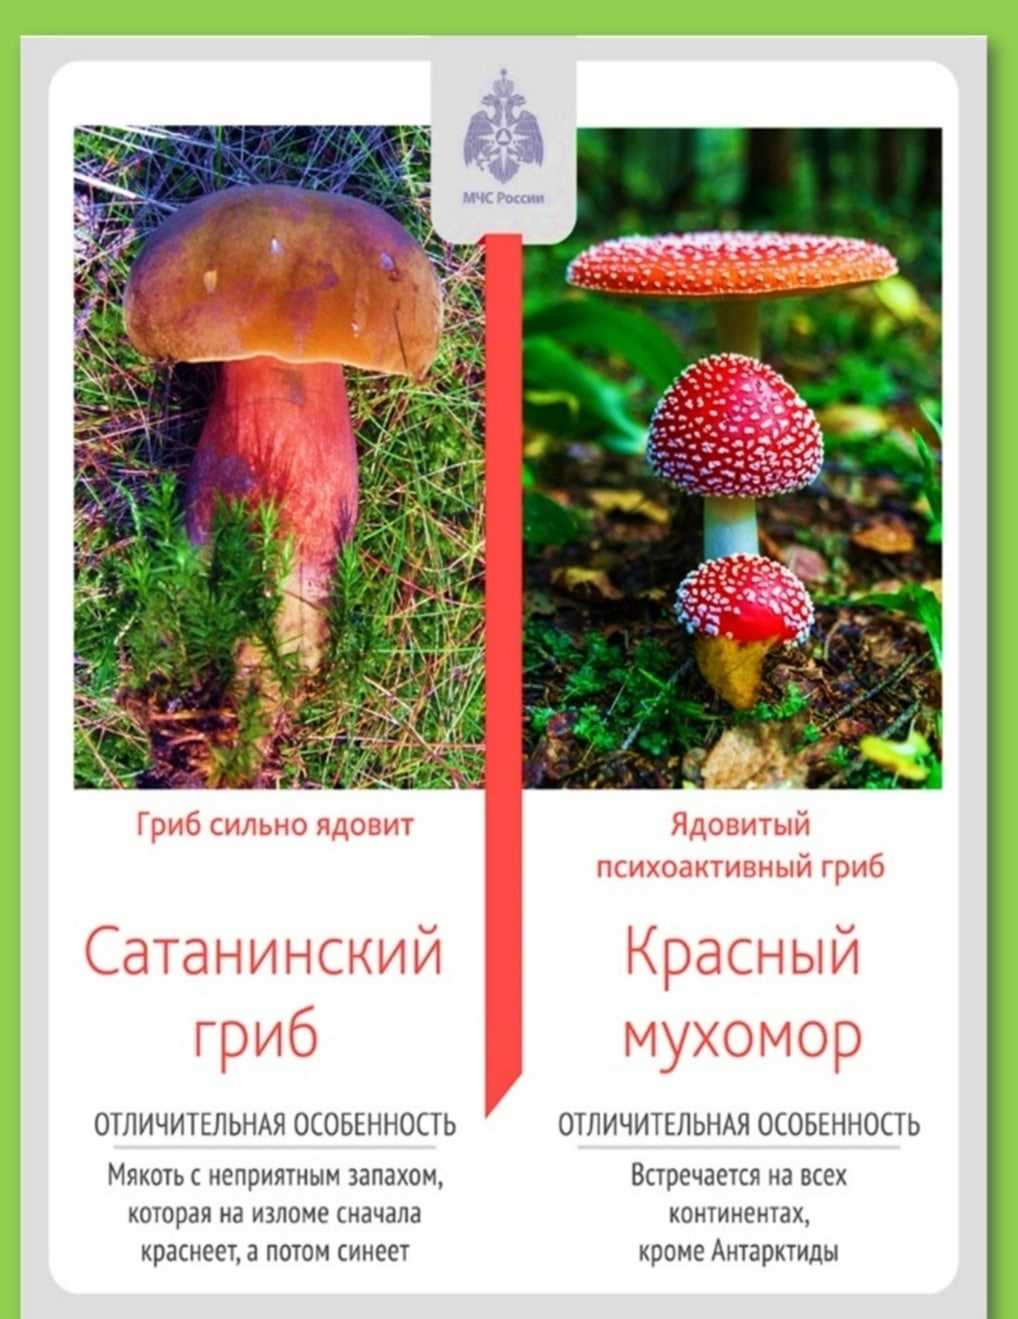 1. Значение грибов в природе и для человека